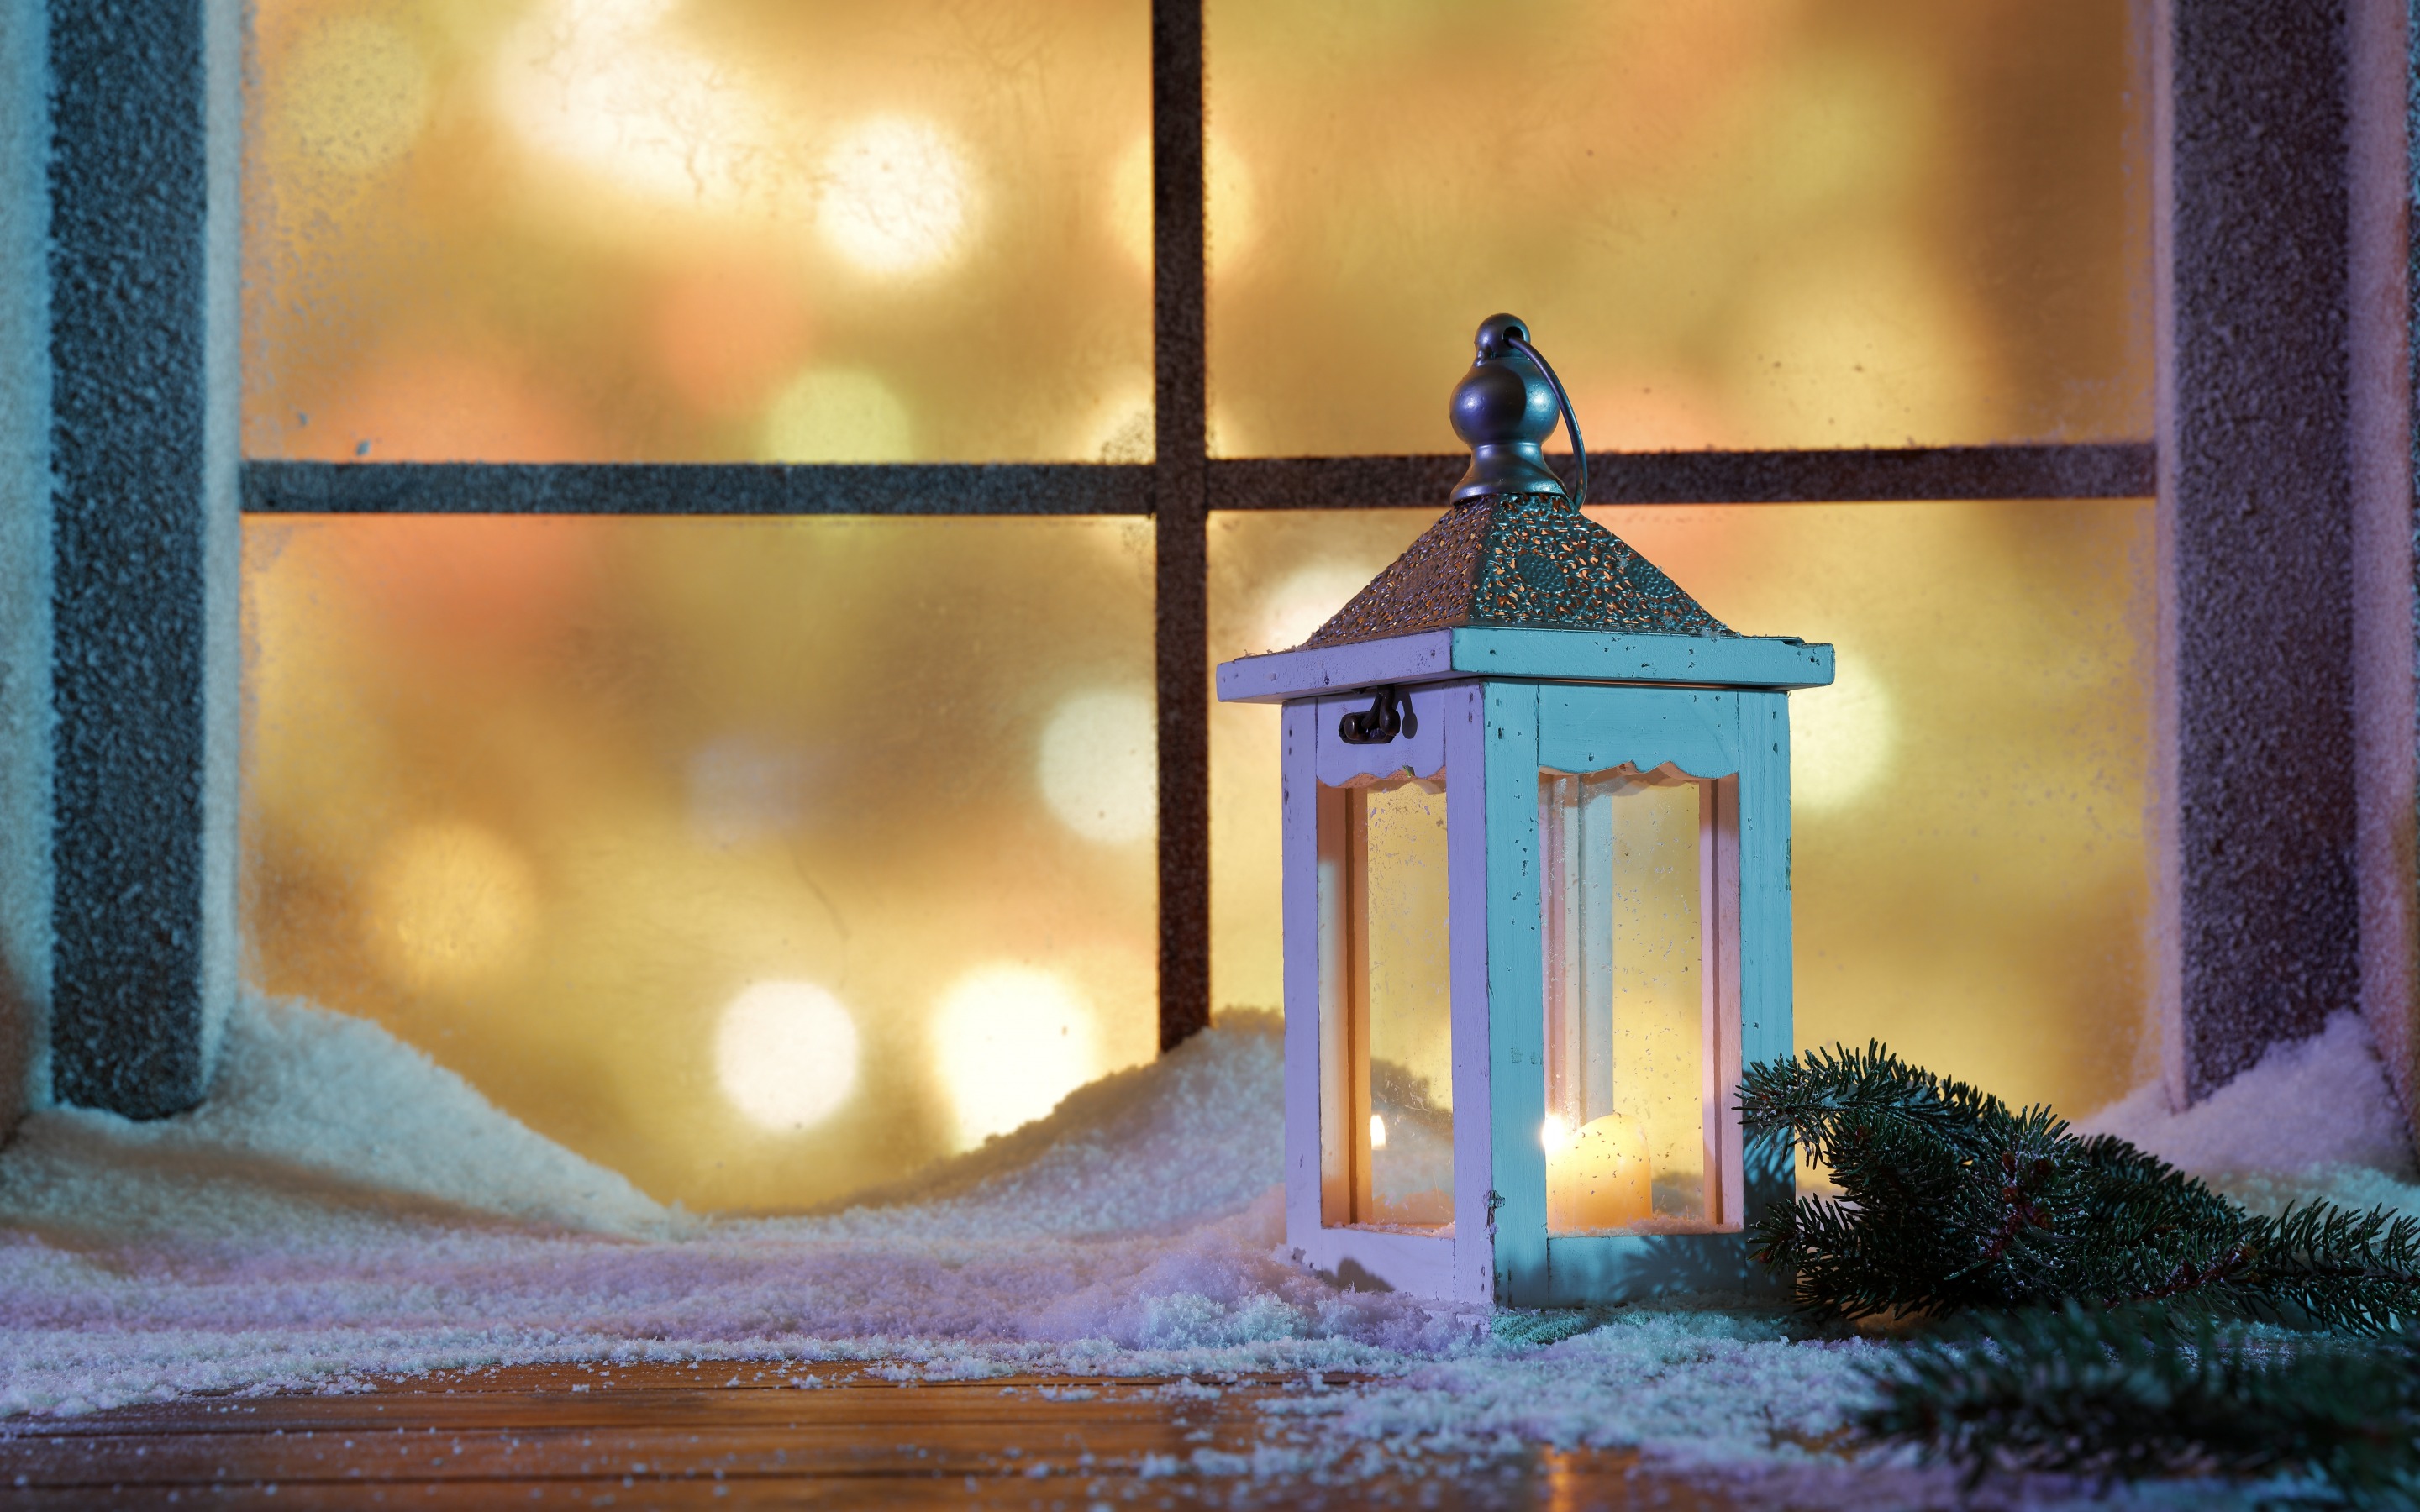 Скачать обои бесплатно Снег, Рождество, Фонарь, Окно, Праздничные картинка на рабочий стол ПК